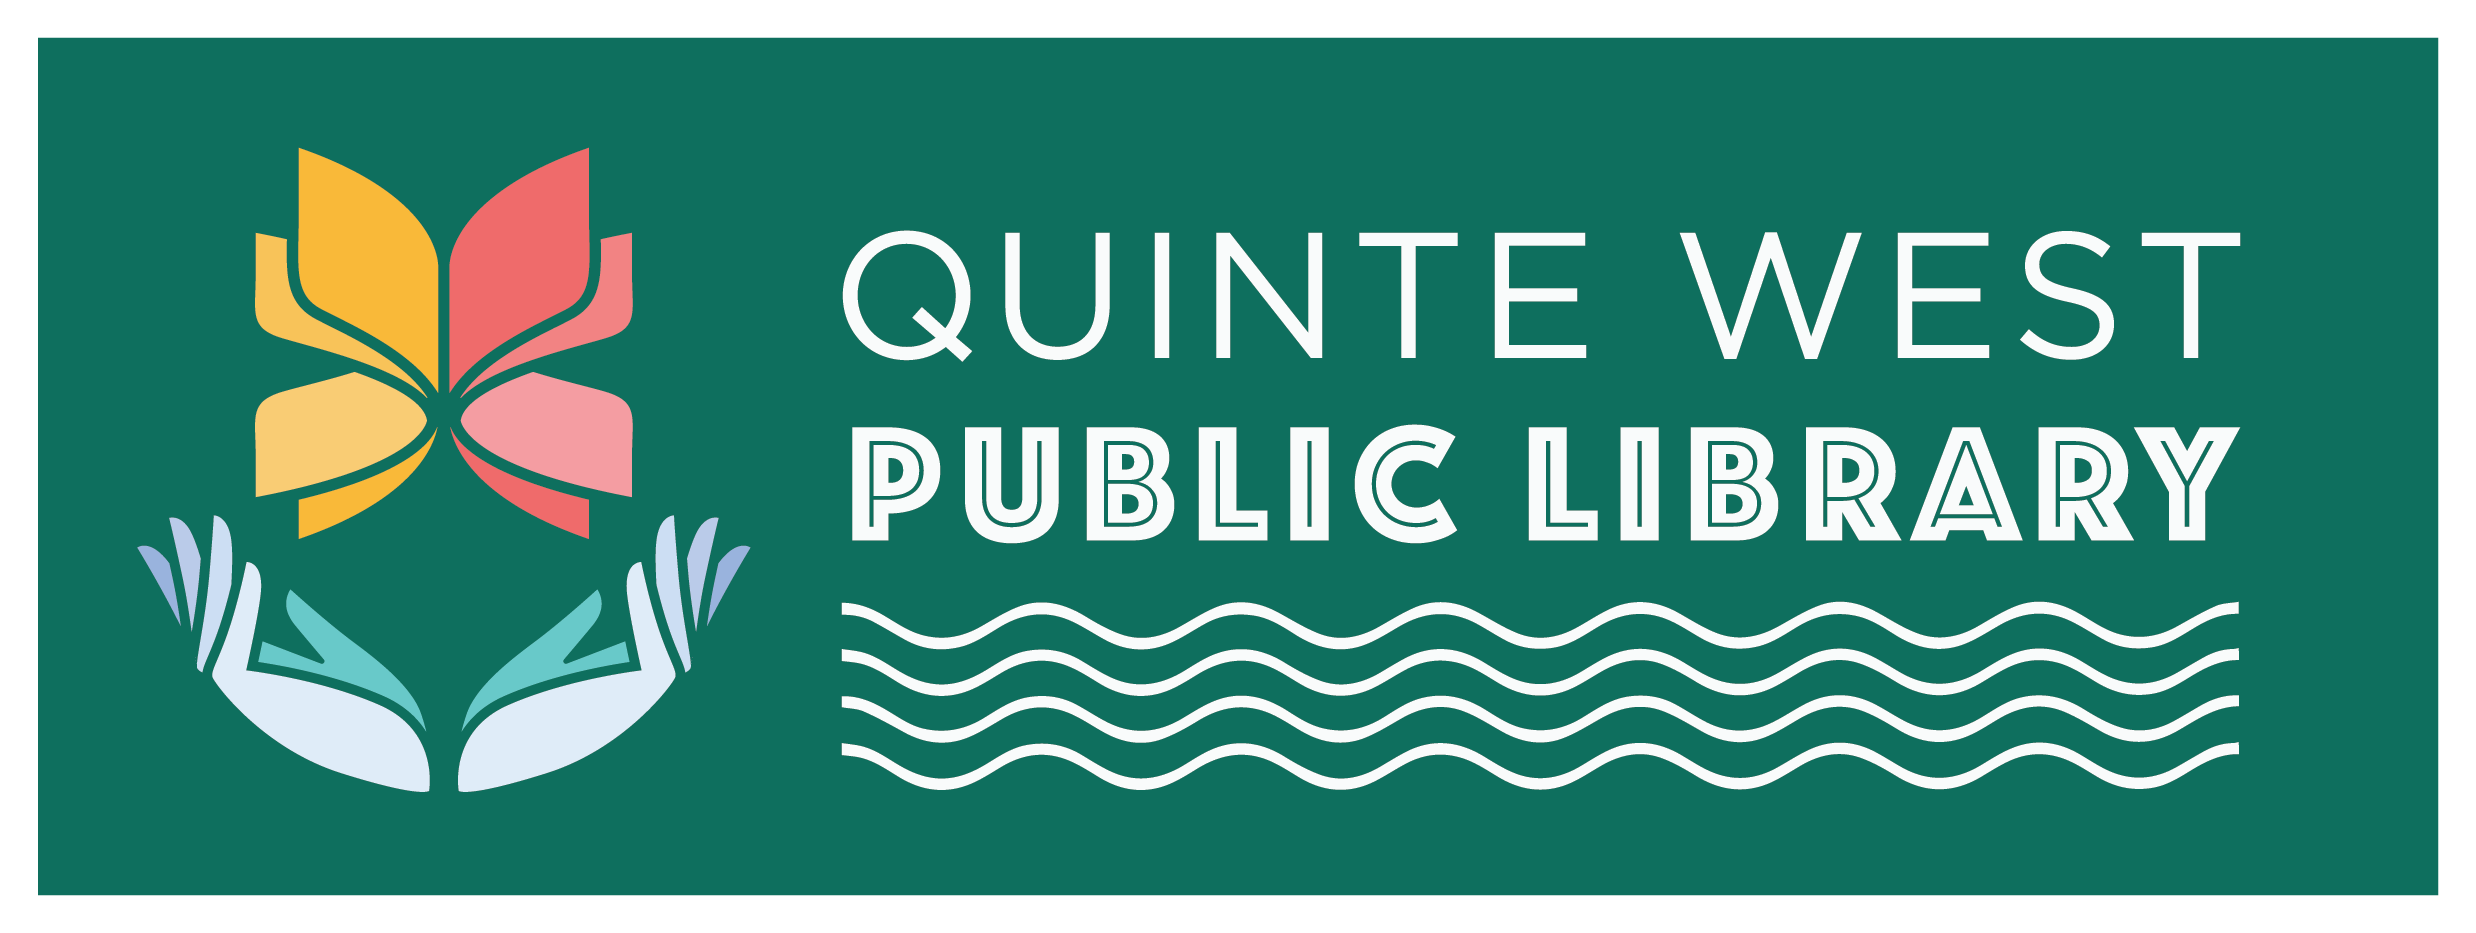 Quinte West Public Library logo